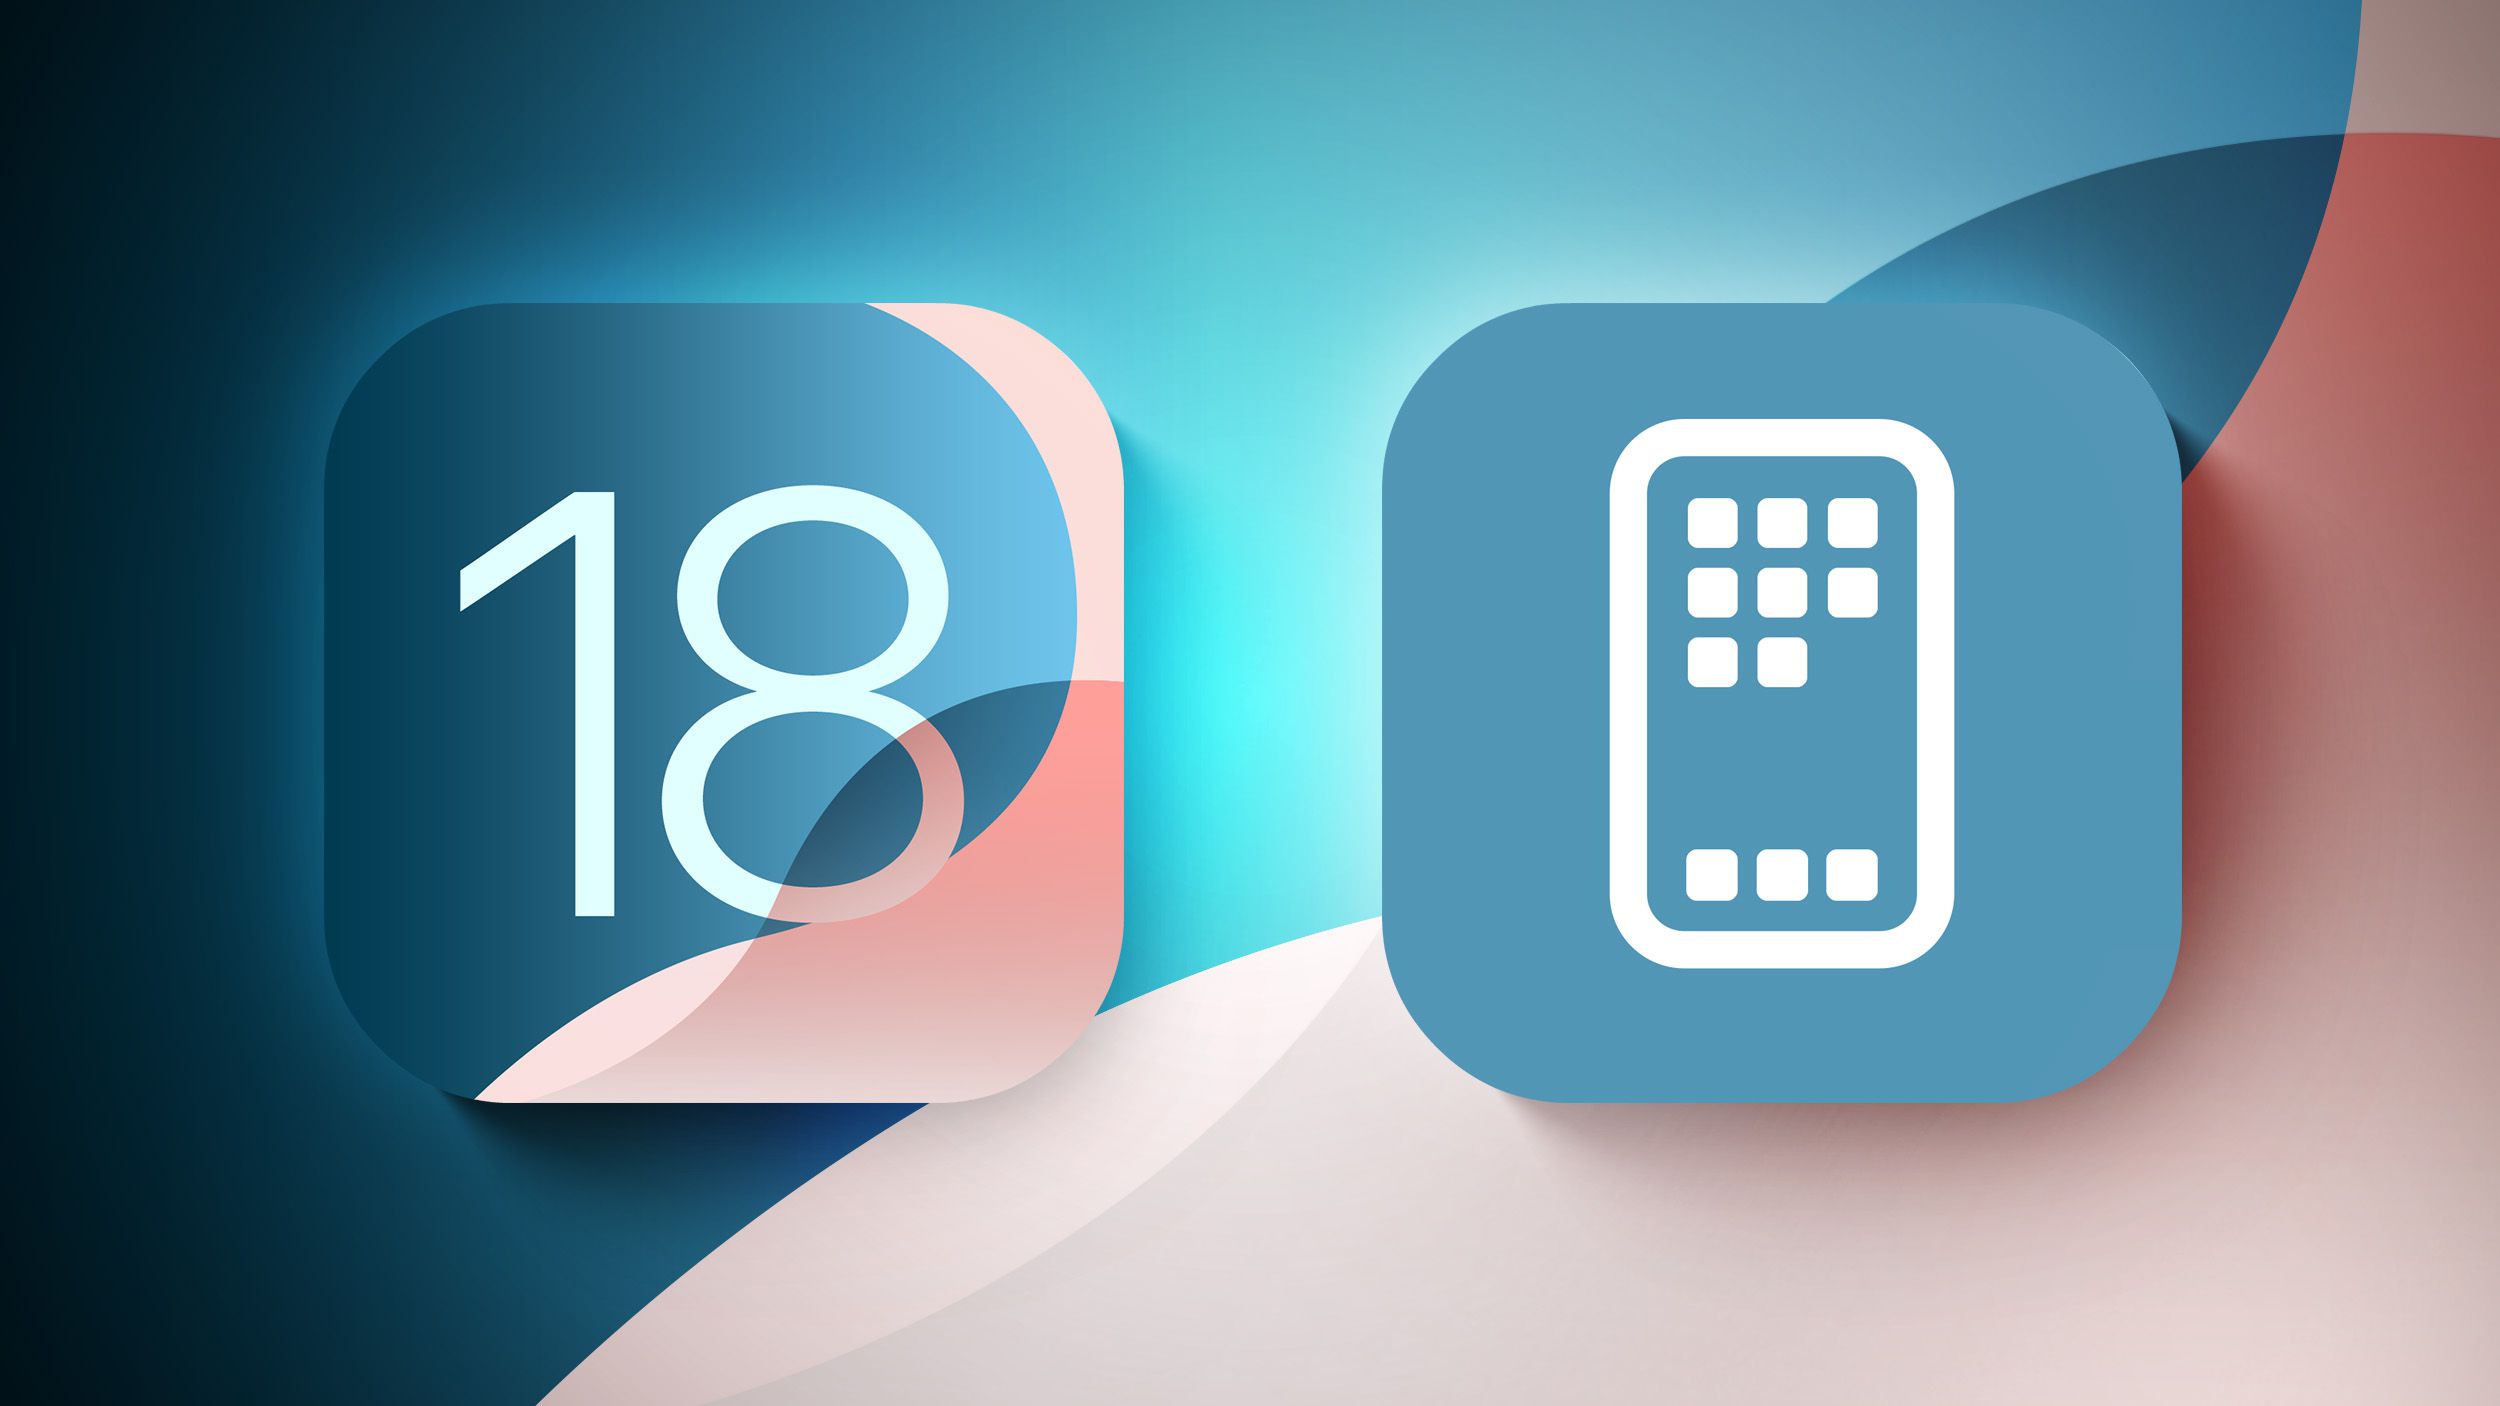 iOS 18: 10 nuevas funciones de pantalla de inicio y bloqueo – Descubre las novedades